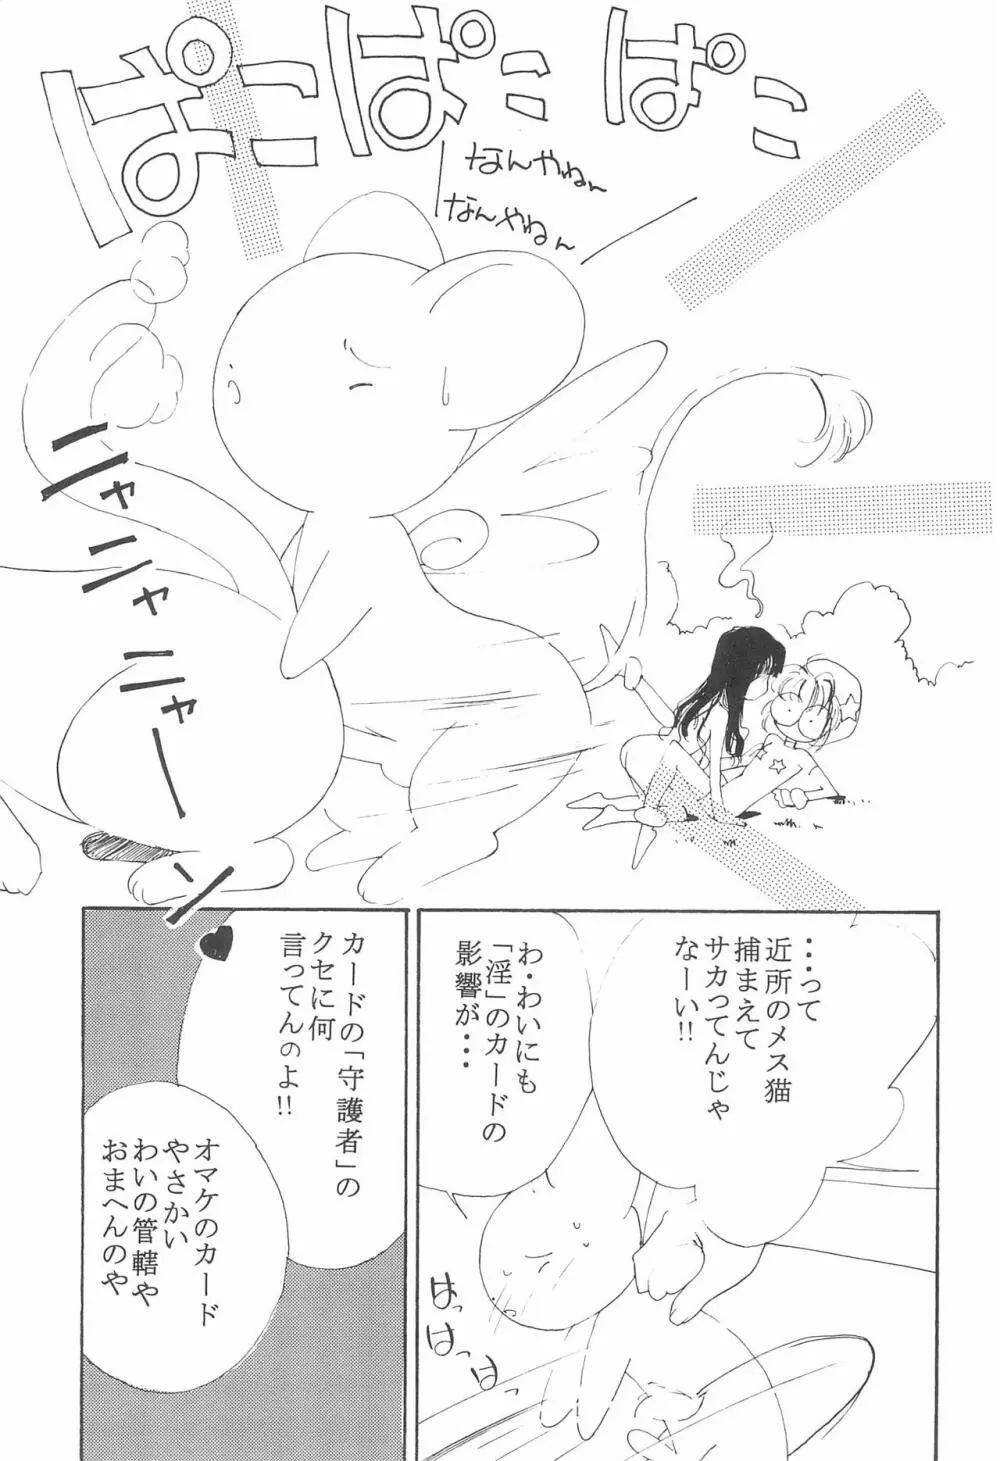 MoMo no Yu 8 13ページ